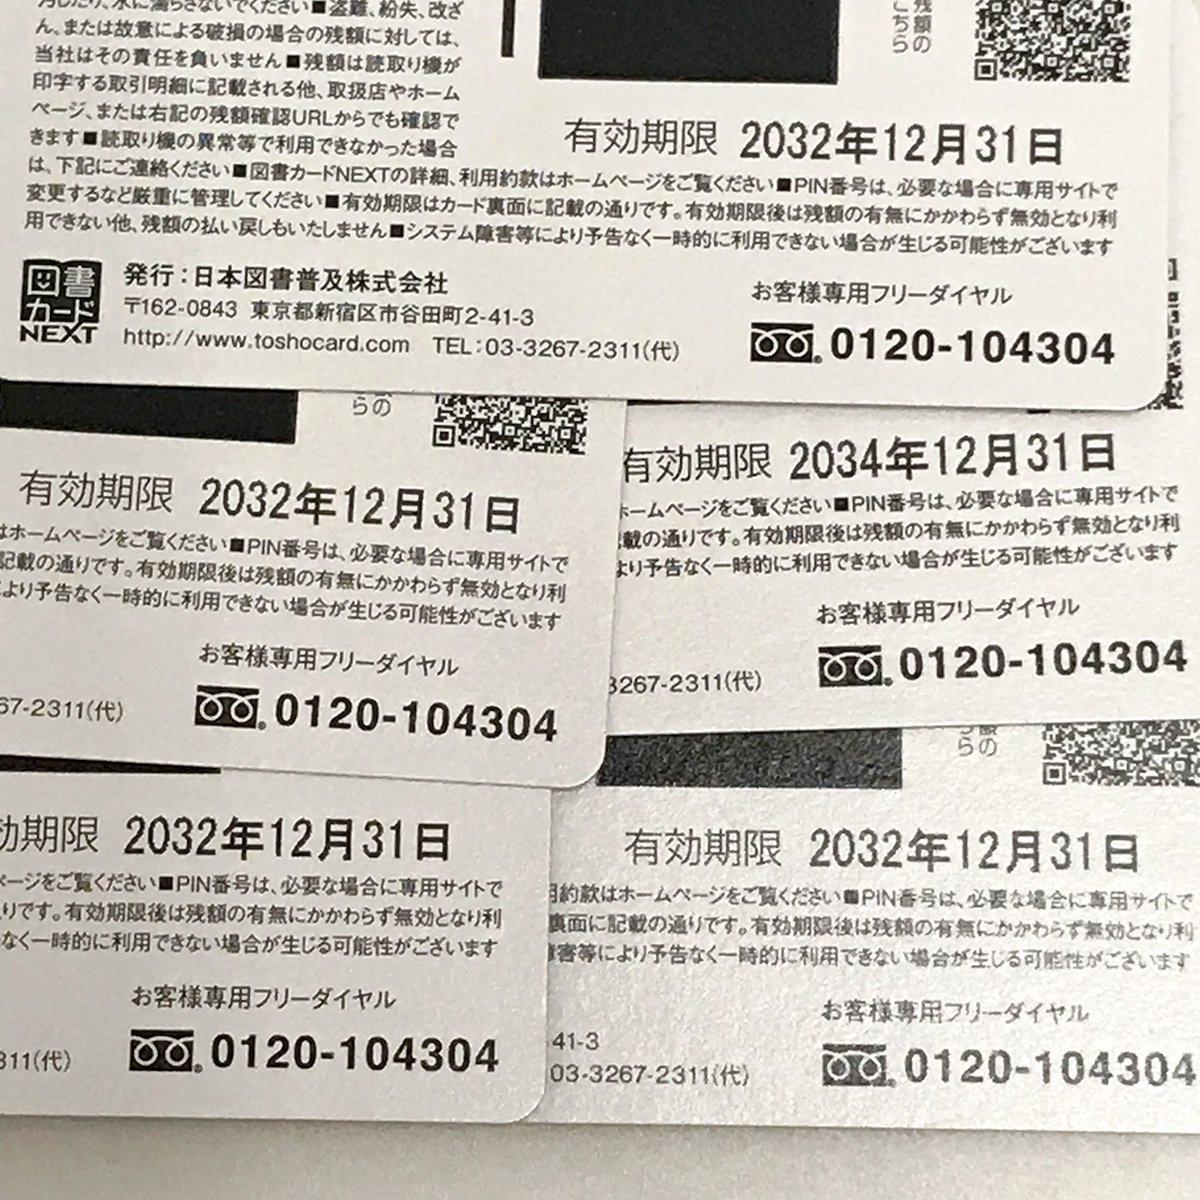 未使用 図書カード NEXT 1000円 5枚セット 5000円分 商品券_画像2